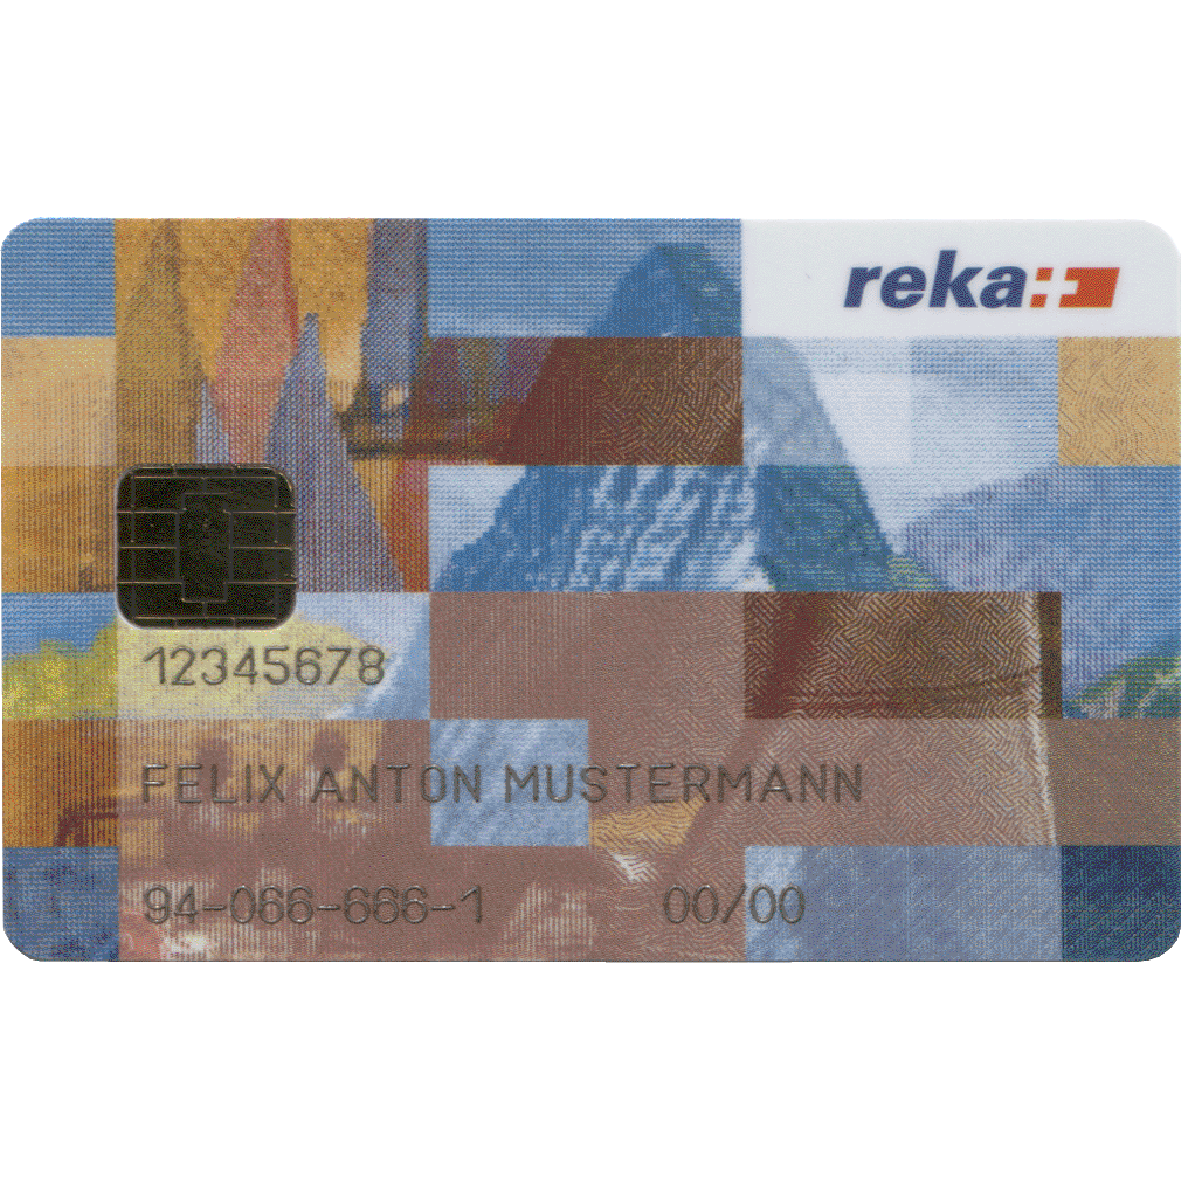 Schweizerische Eidgenossenschaft, Reka-Card (obverse)